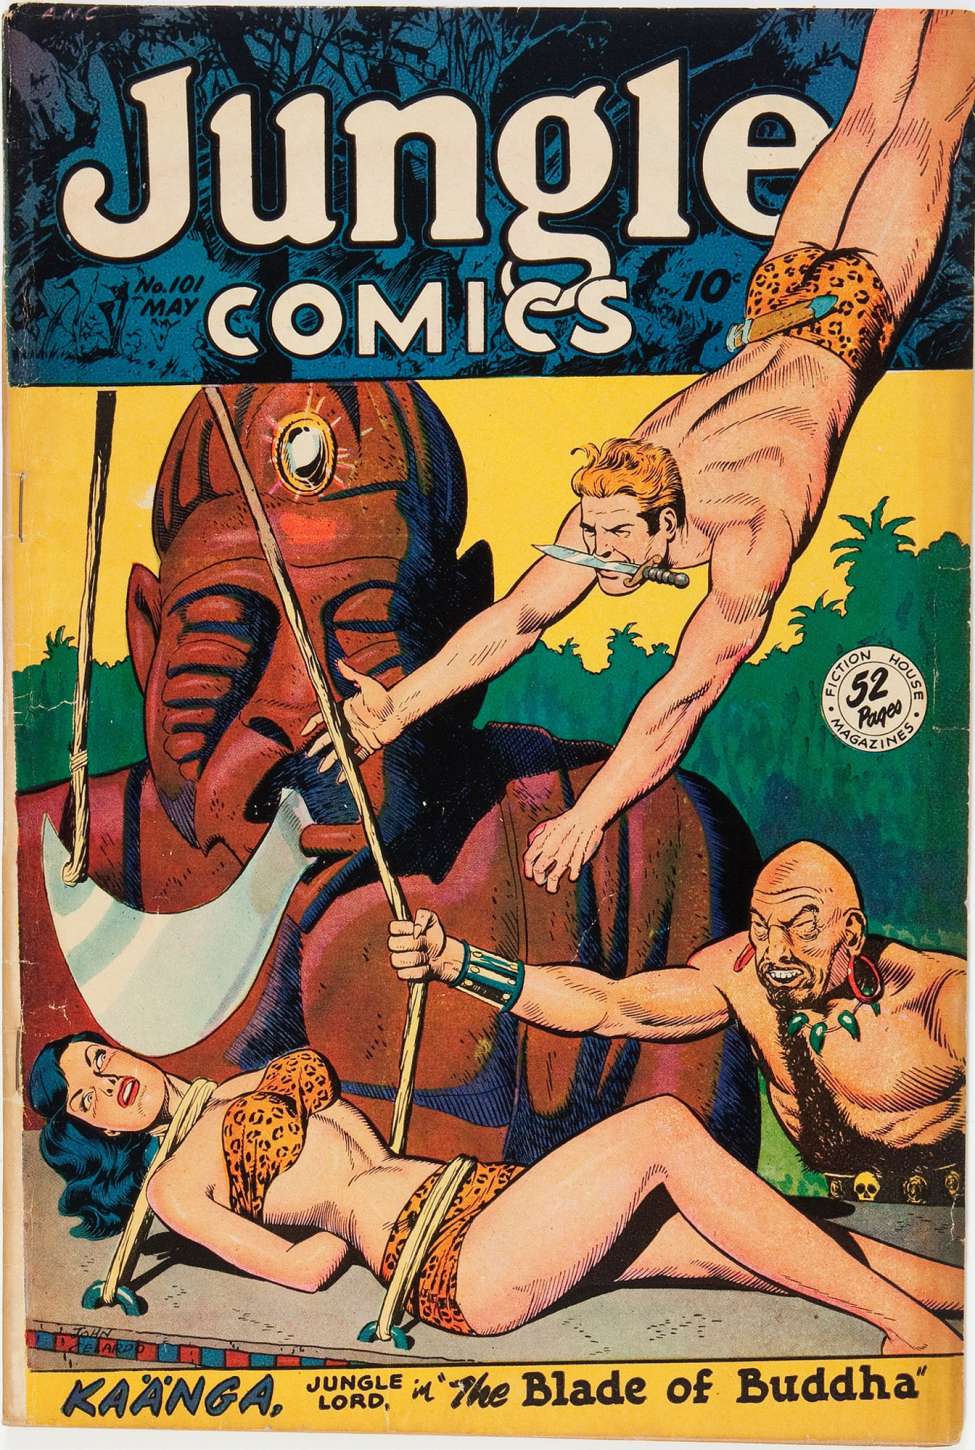 Book Cover For Jungle Comics 101 - Version 2